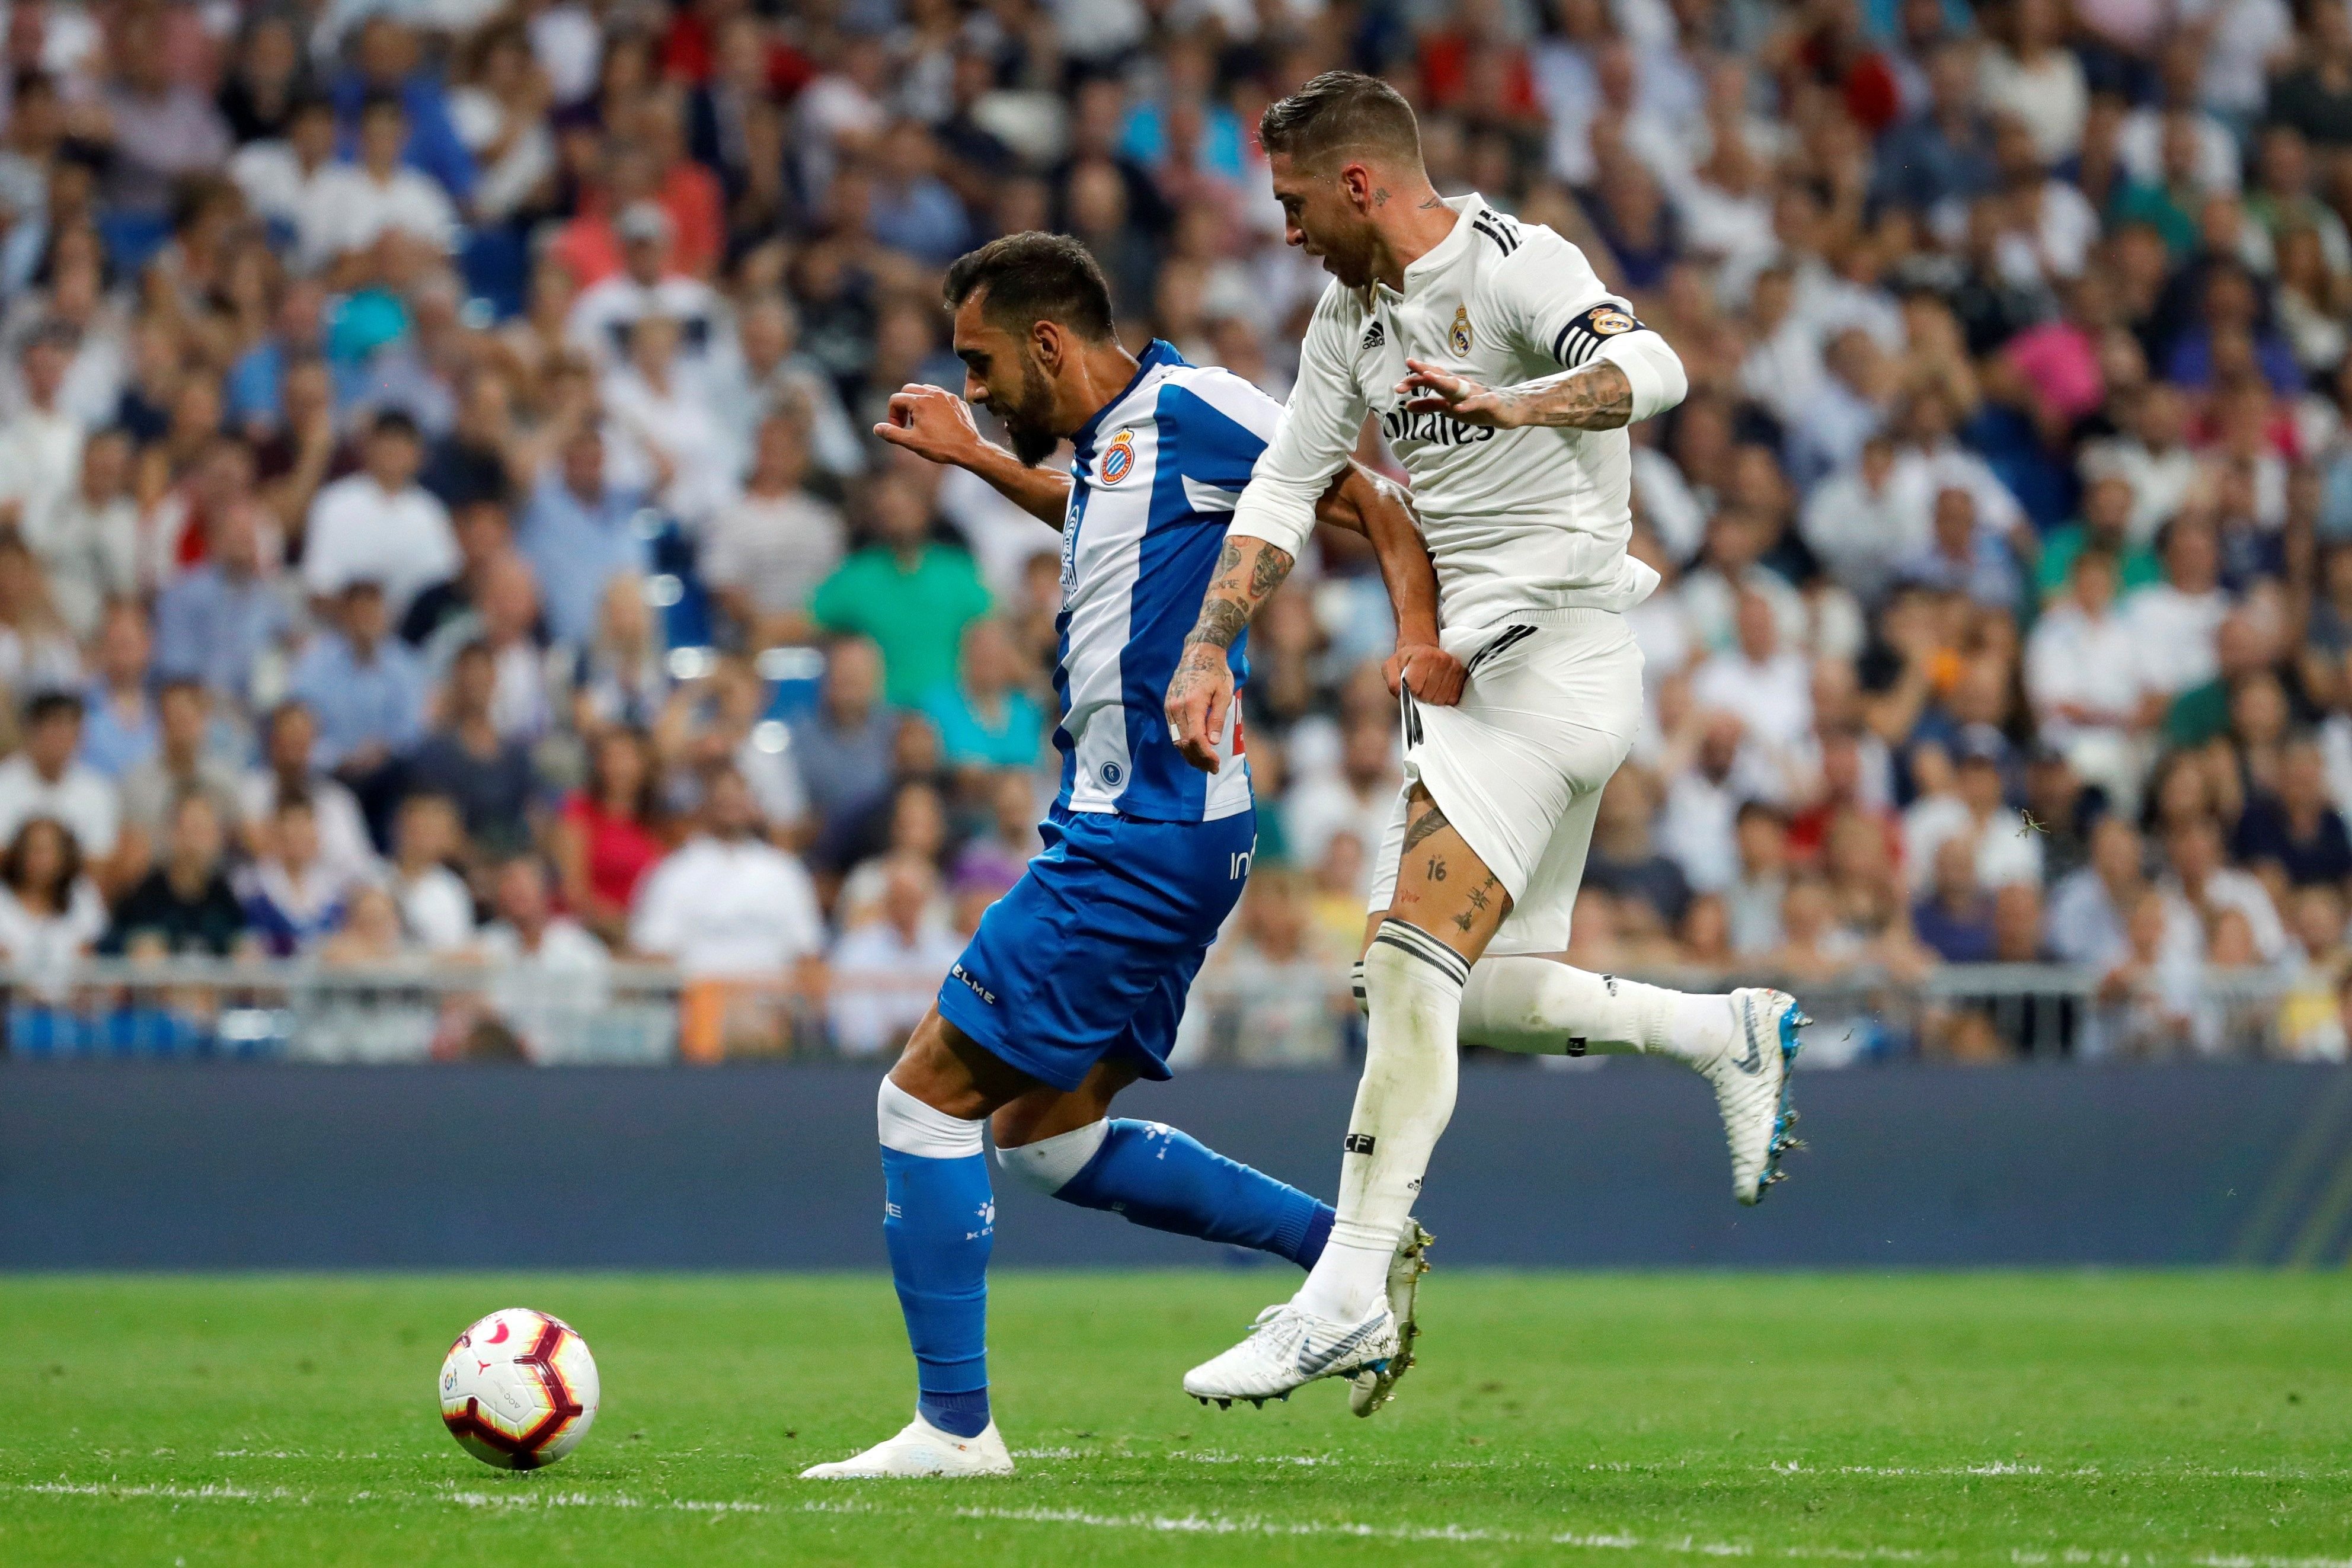 La falta de puntería condena al Espanyol en Madrid (1-0)